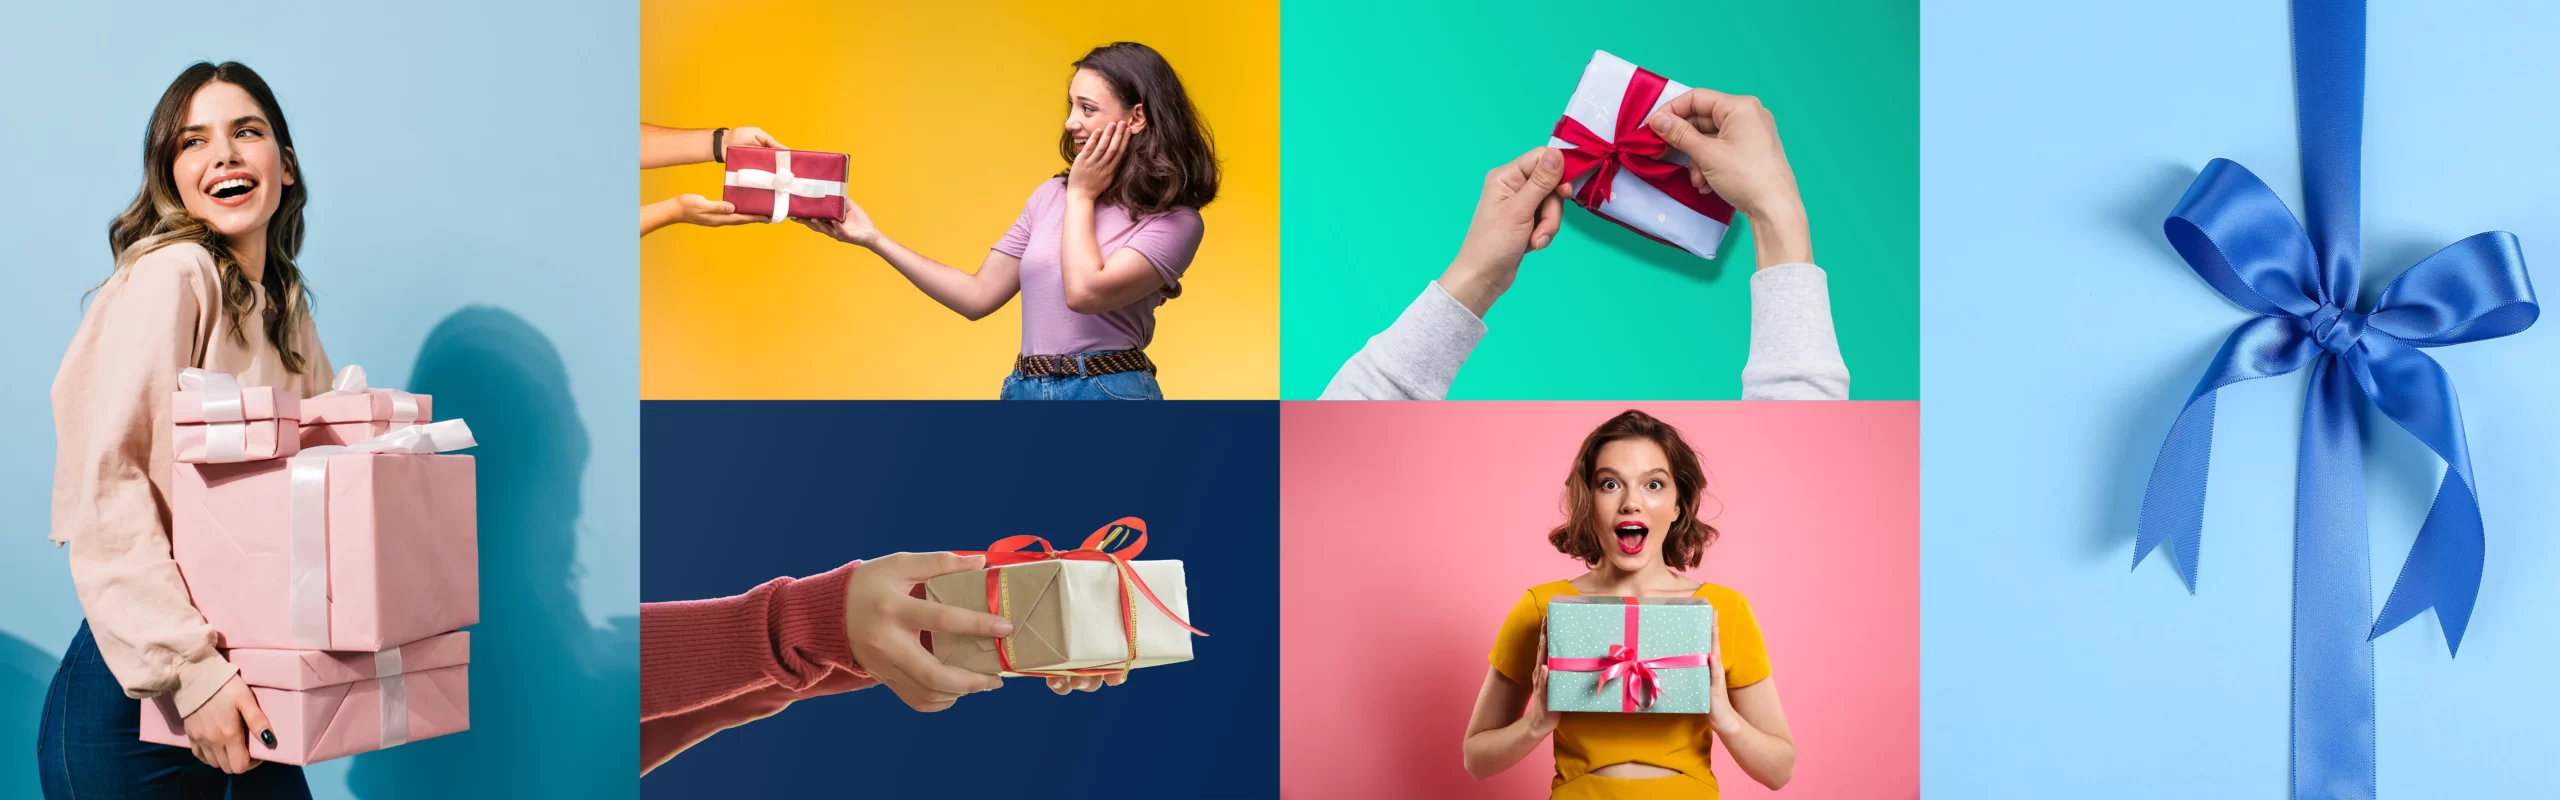 Cadeaukiezer - Cadeautips en Inspiratie voor Cadeaus - WEBP Header